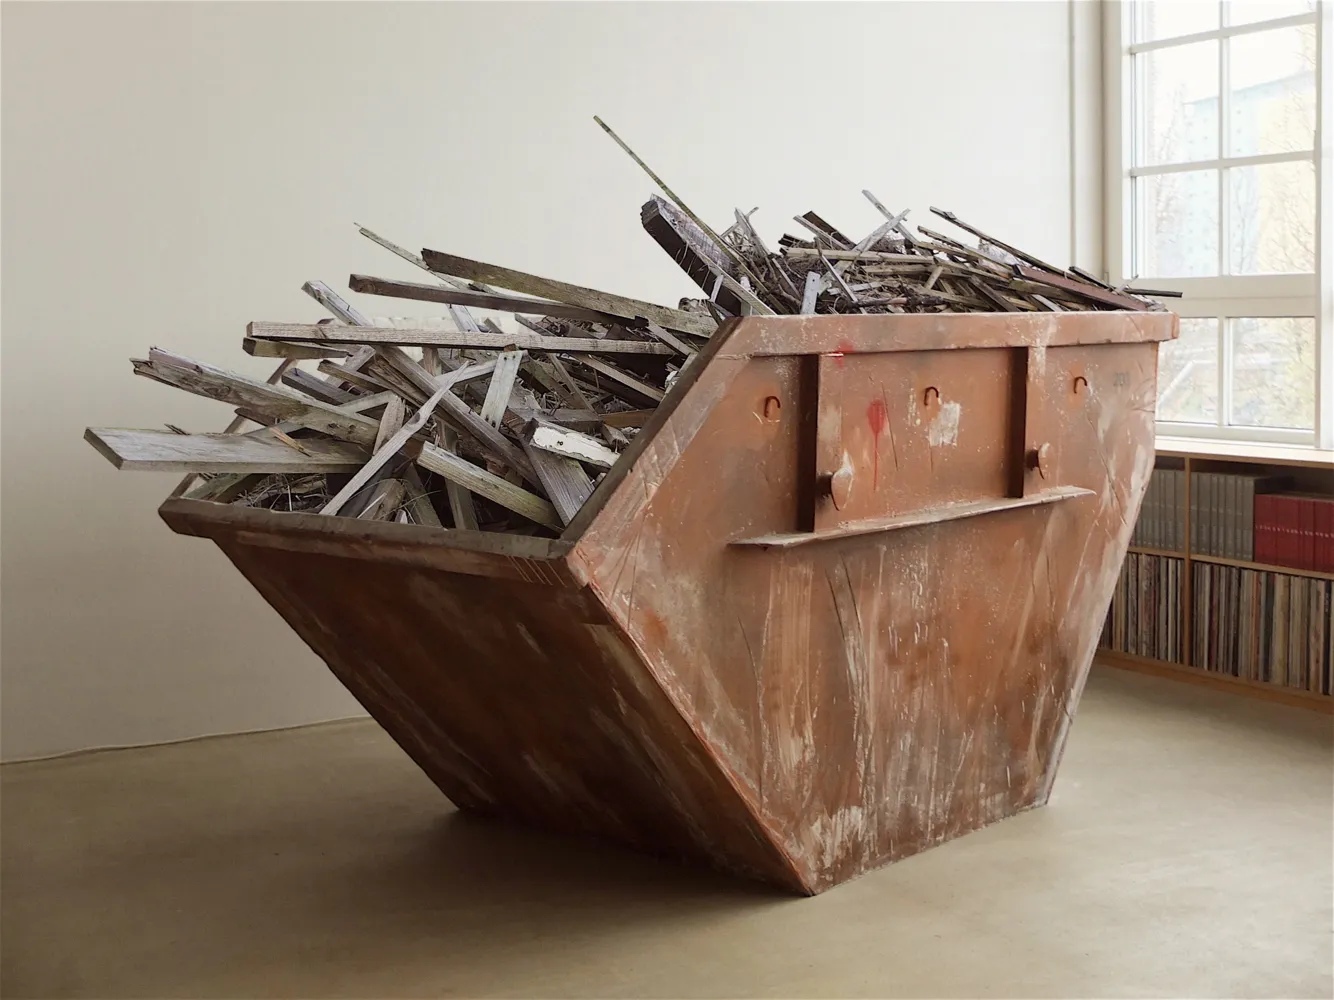 Franz Burkhardt, "2 Kubik 204", 2020 - 2021, Mixed media, plywood, styrodur, styrofoam, paint, 120x200x210cm